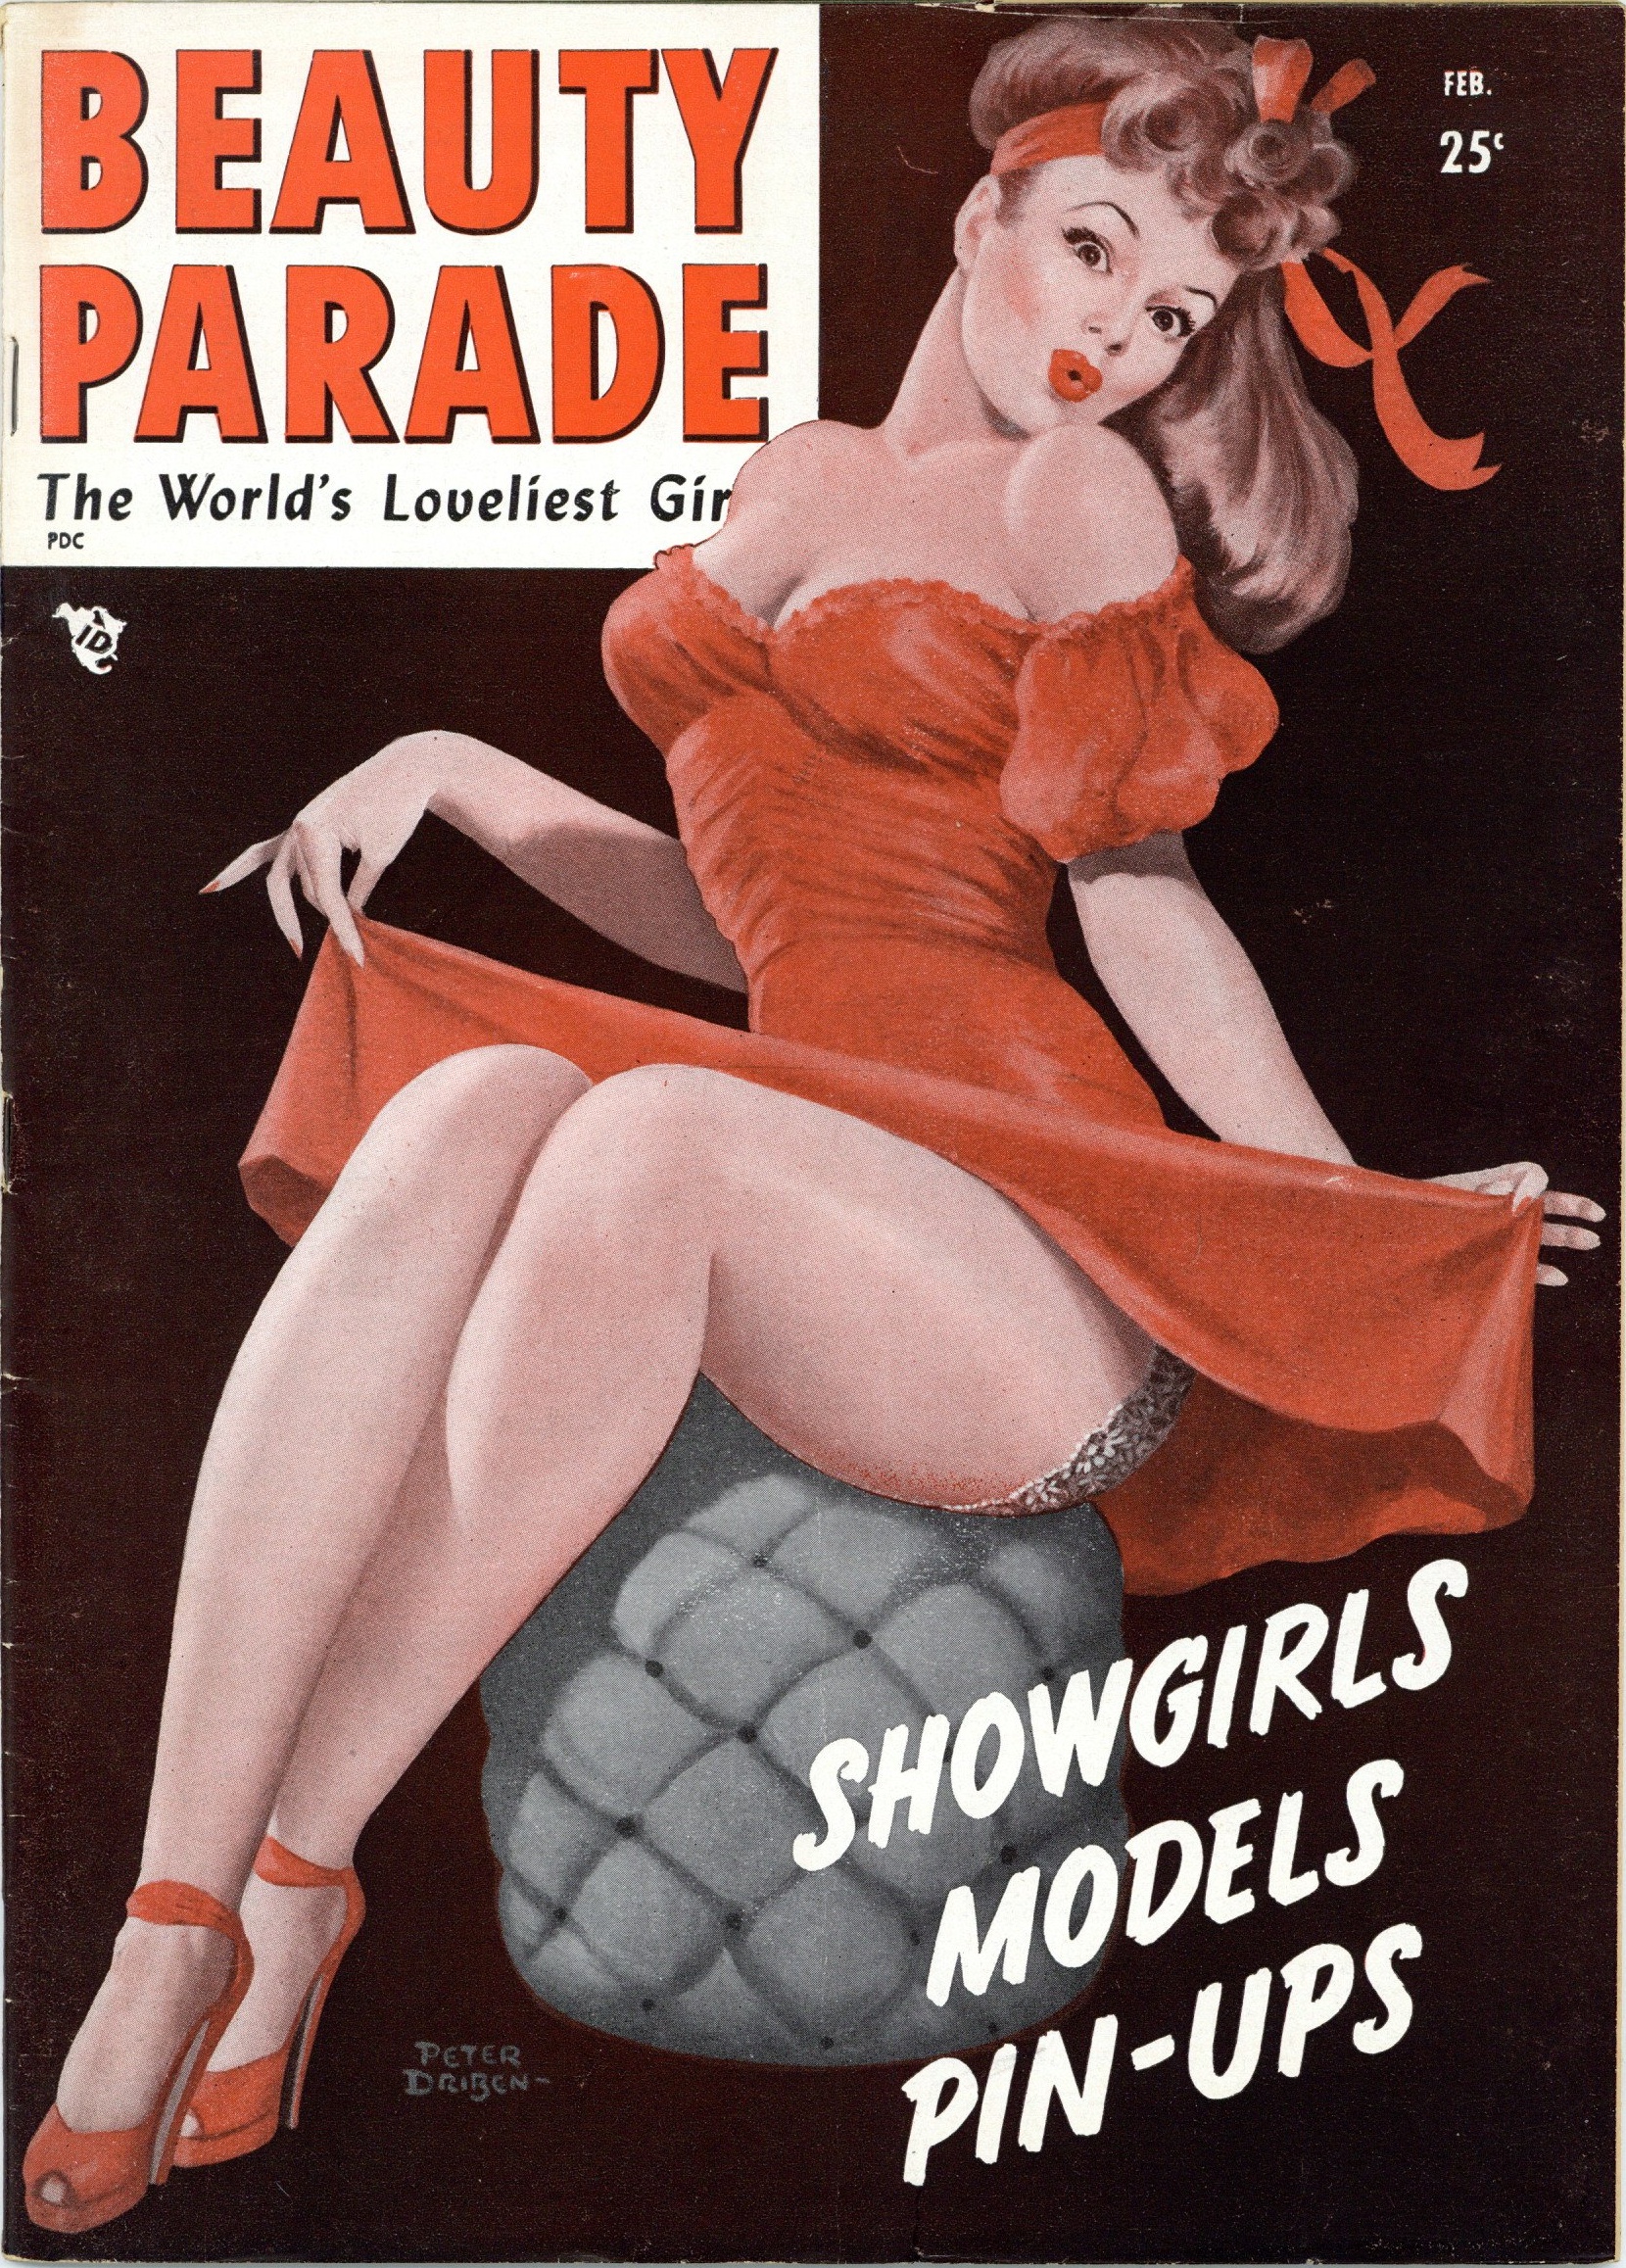 Beauty Parade, Feb 1949